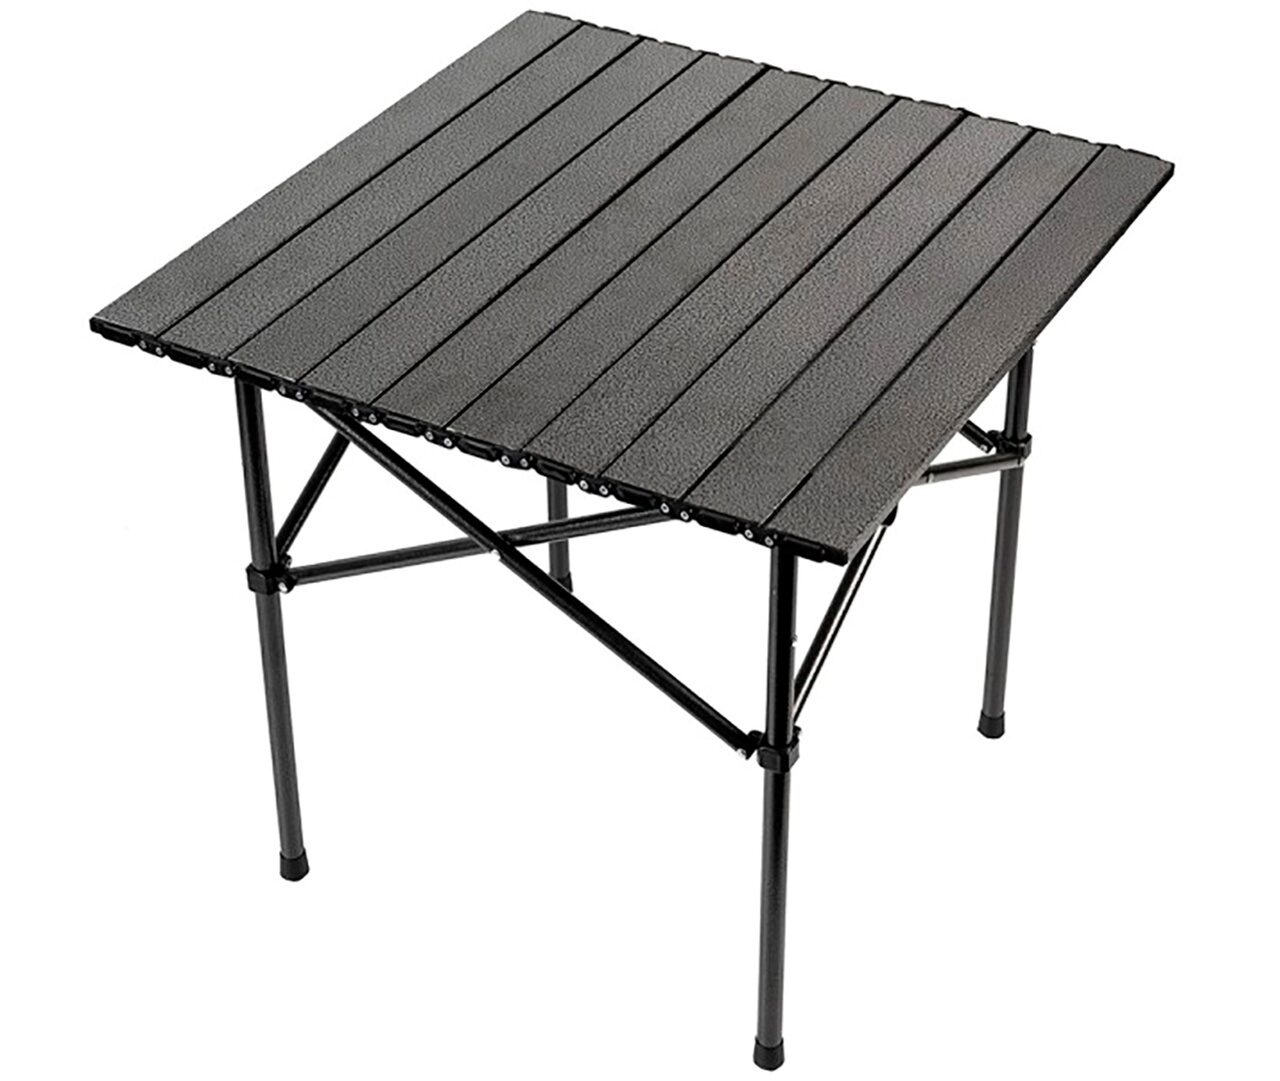 Стол складной алюминиевый 51 х 51 см Малый ECarp - Folding Aluminum Table Small